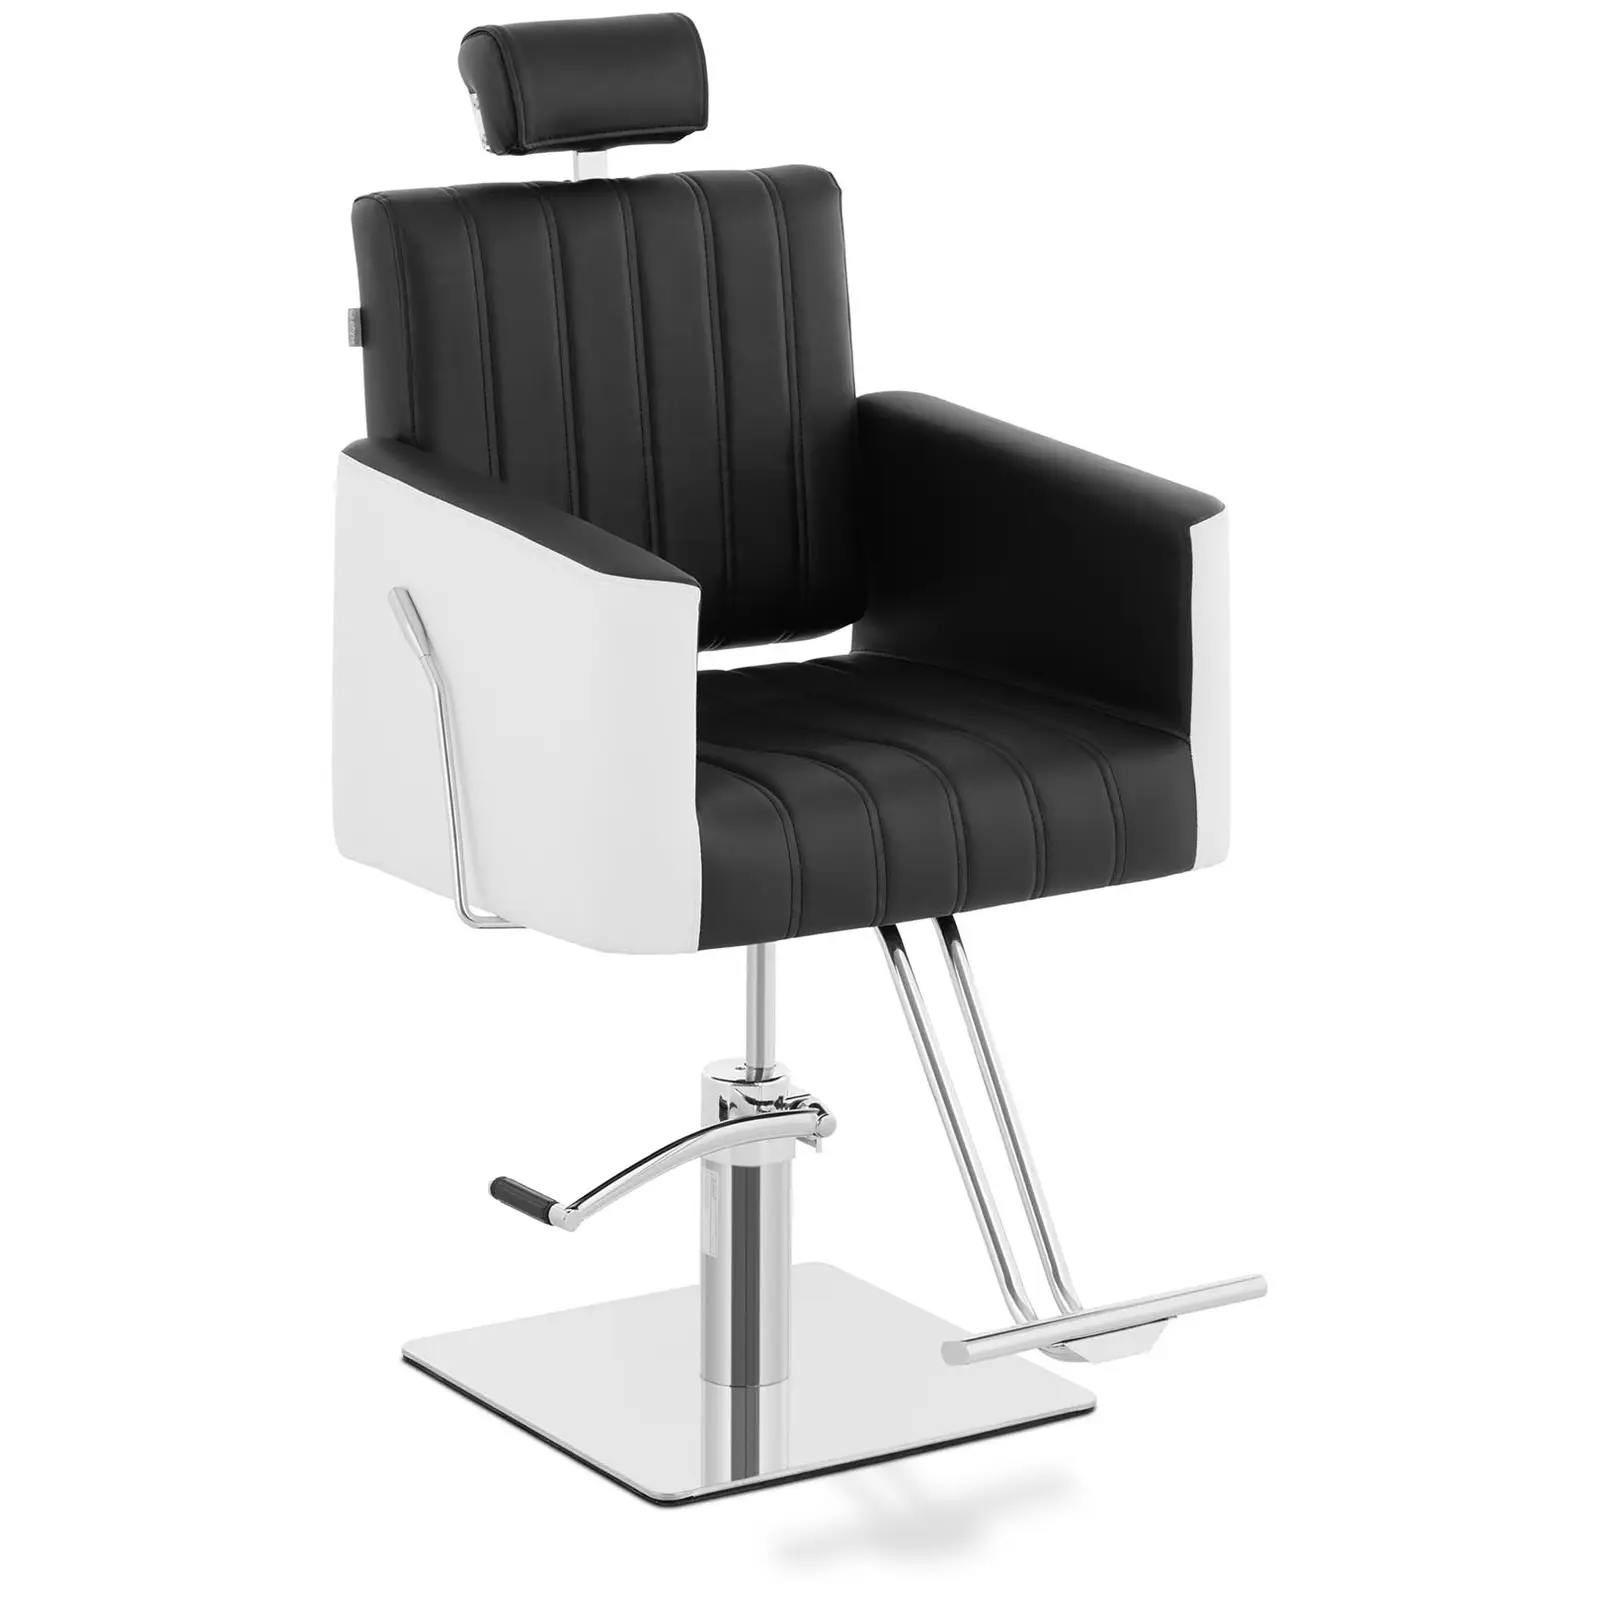 Fotel fryzjerski z podnóżkiem - 470 x 630 mm - 150 kg - czarny, biały